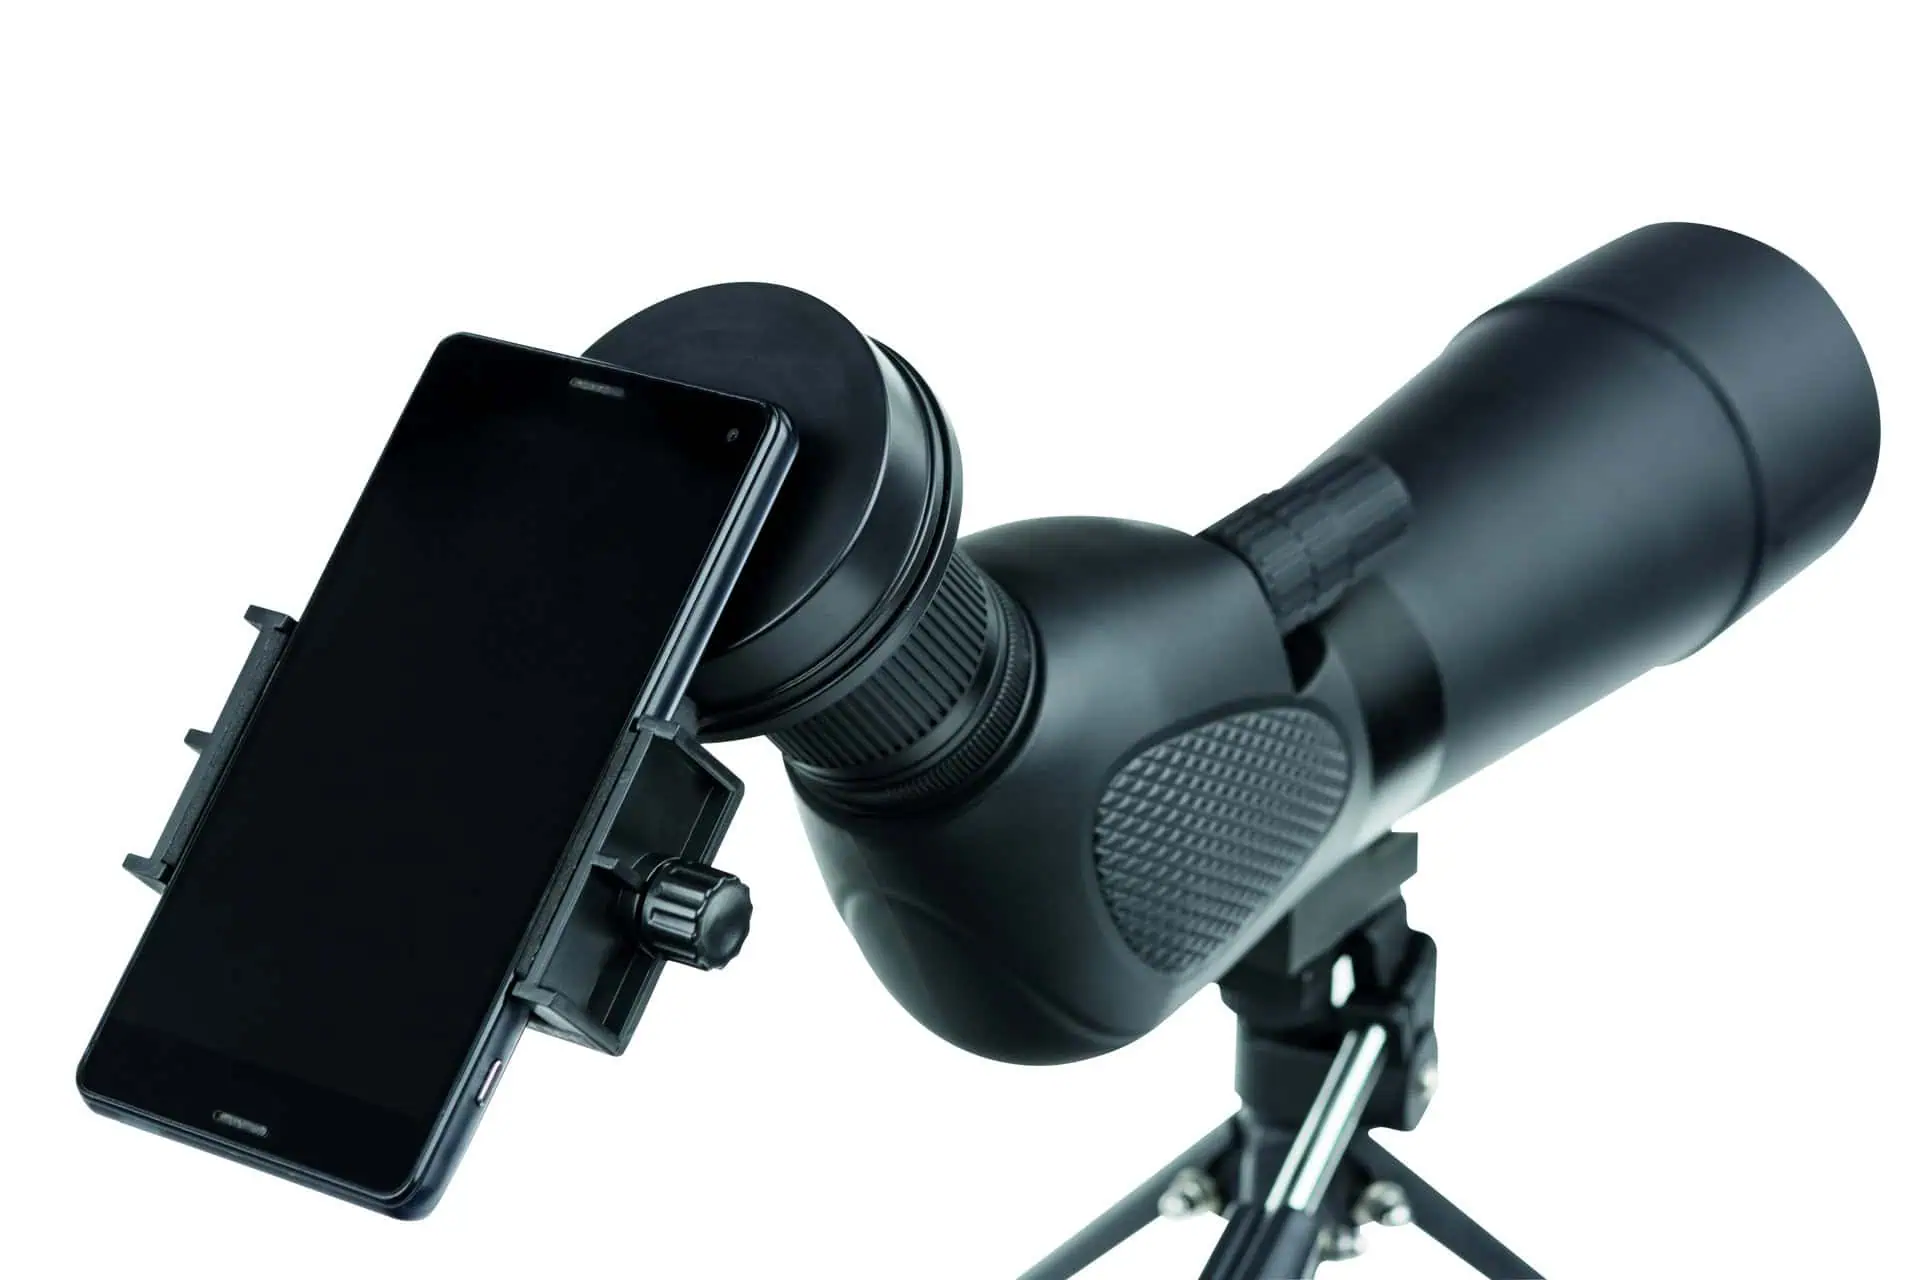 Adaptateur photo universel pour smartphone SA-1 pour lunettes d'observation